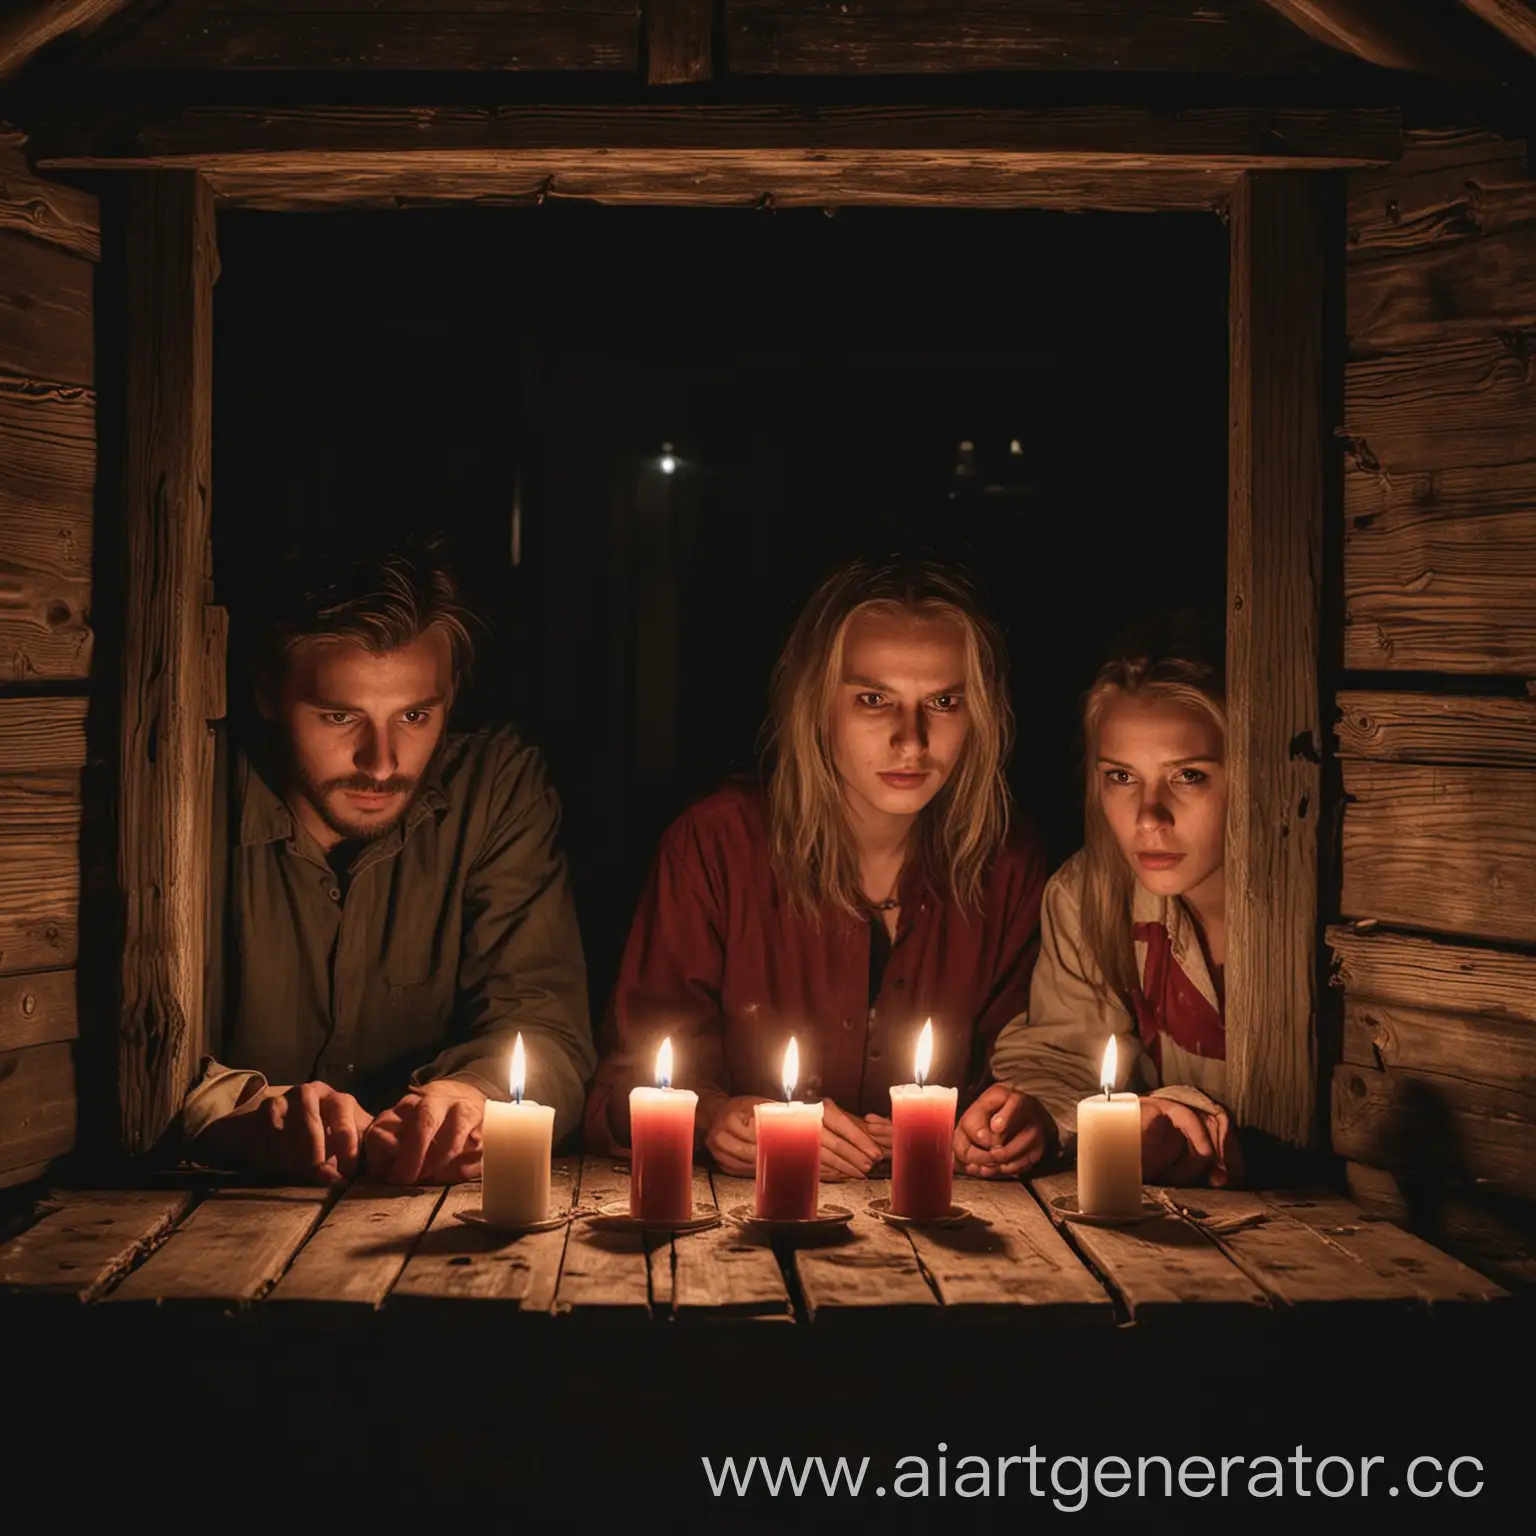 три рецидивиста сидят за деревянном в  деревянной избе за окном ночь на столе три свечи на стенах кровь